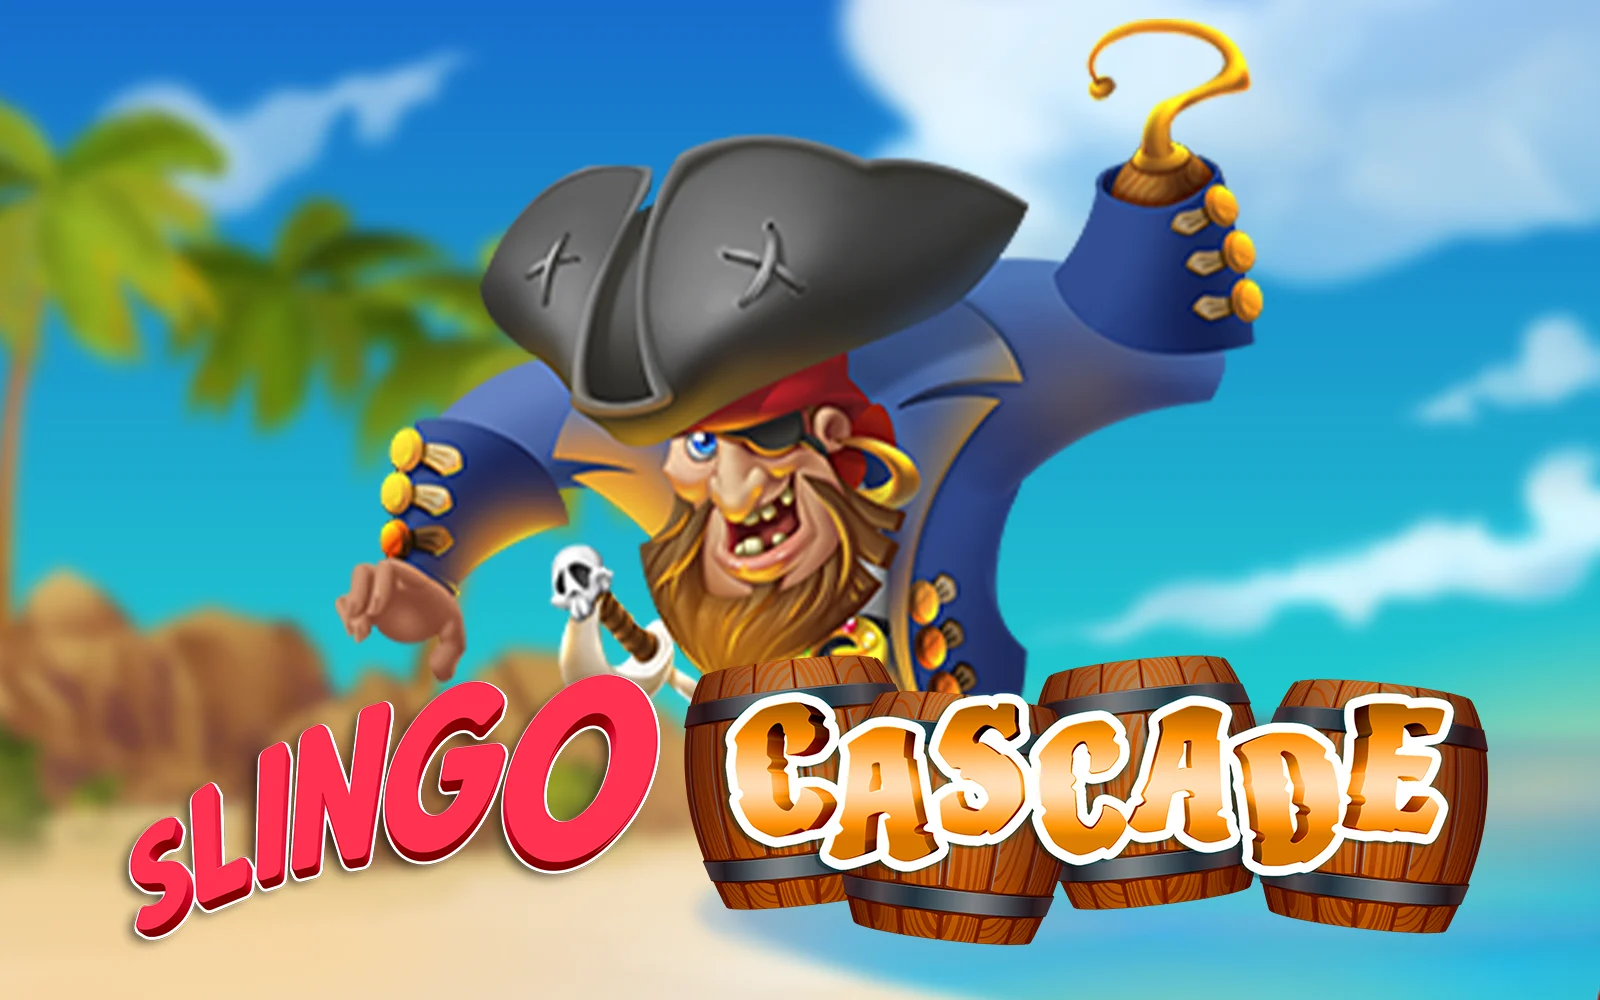 Gioca a Slingo Cascade sul casino online Starcasino.be